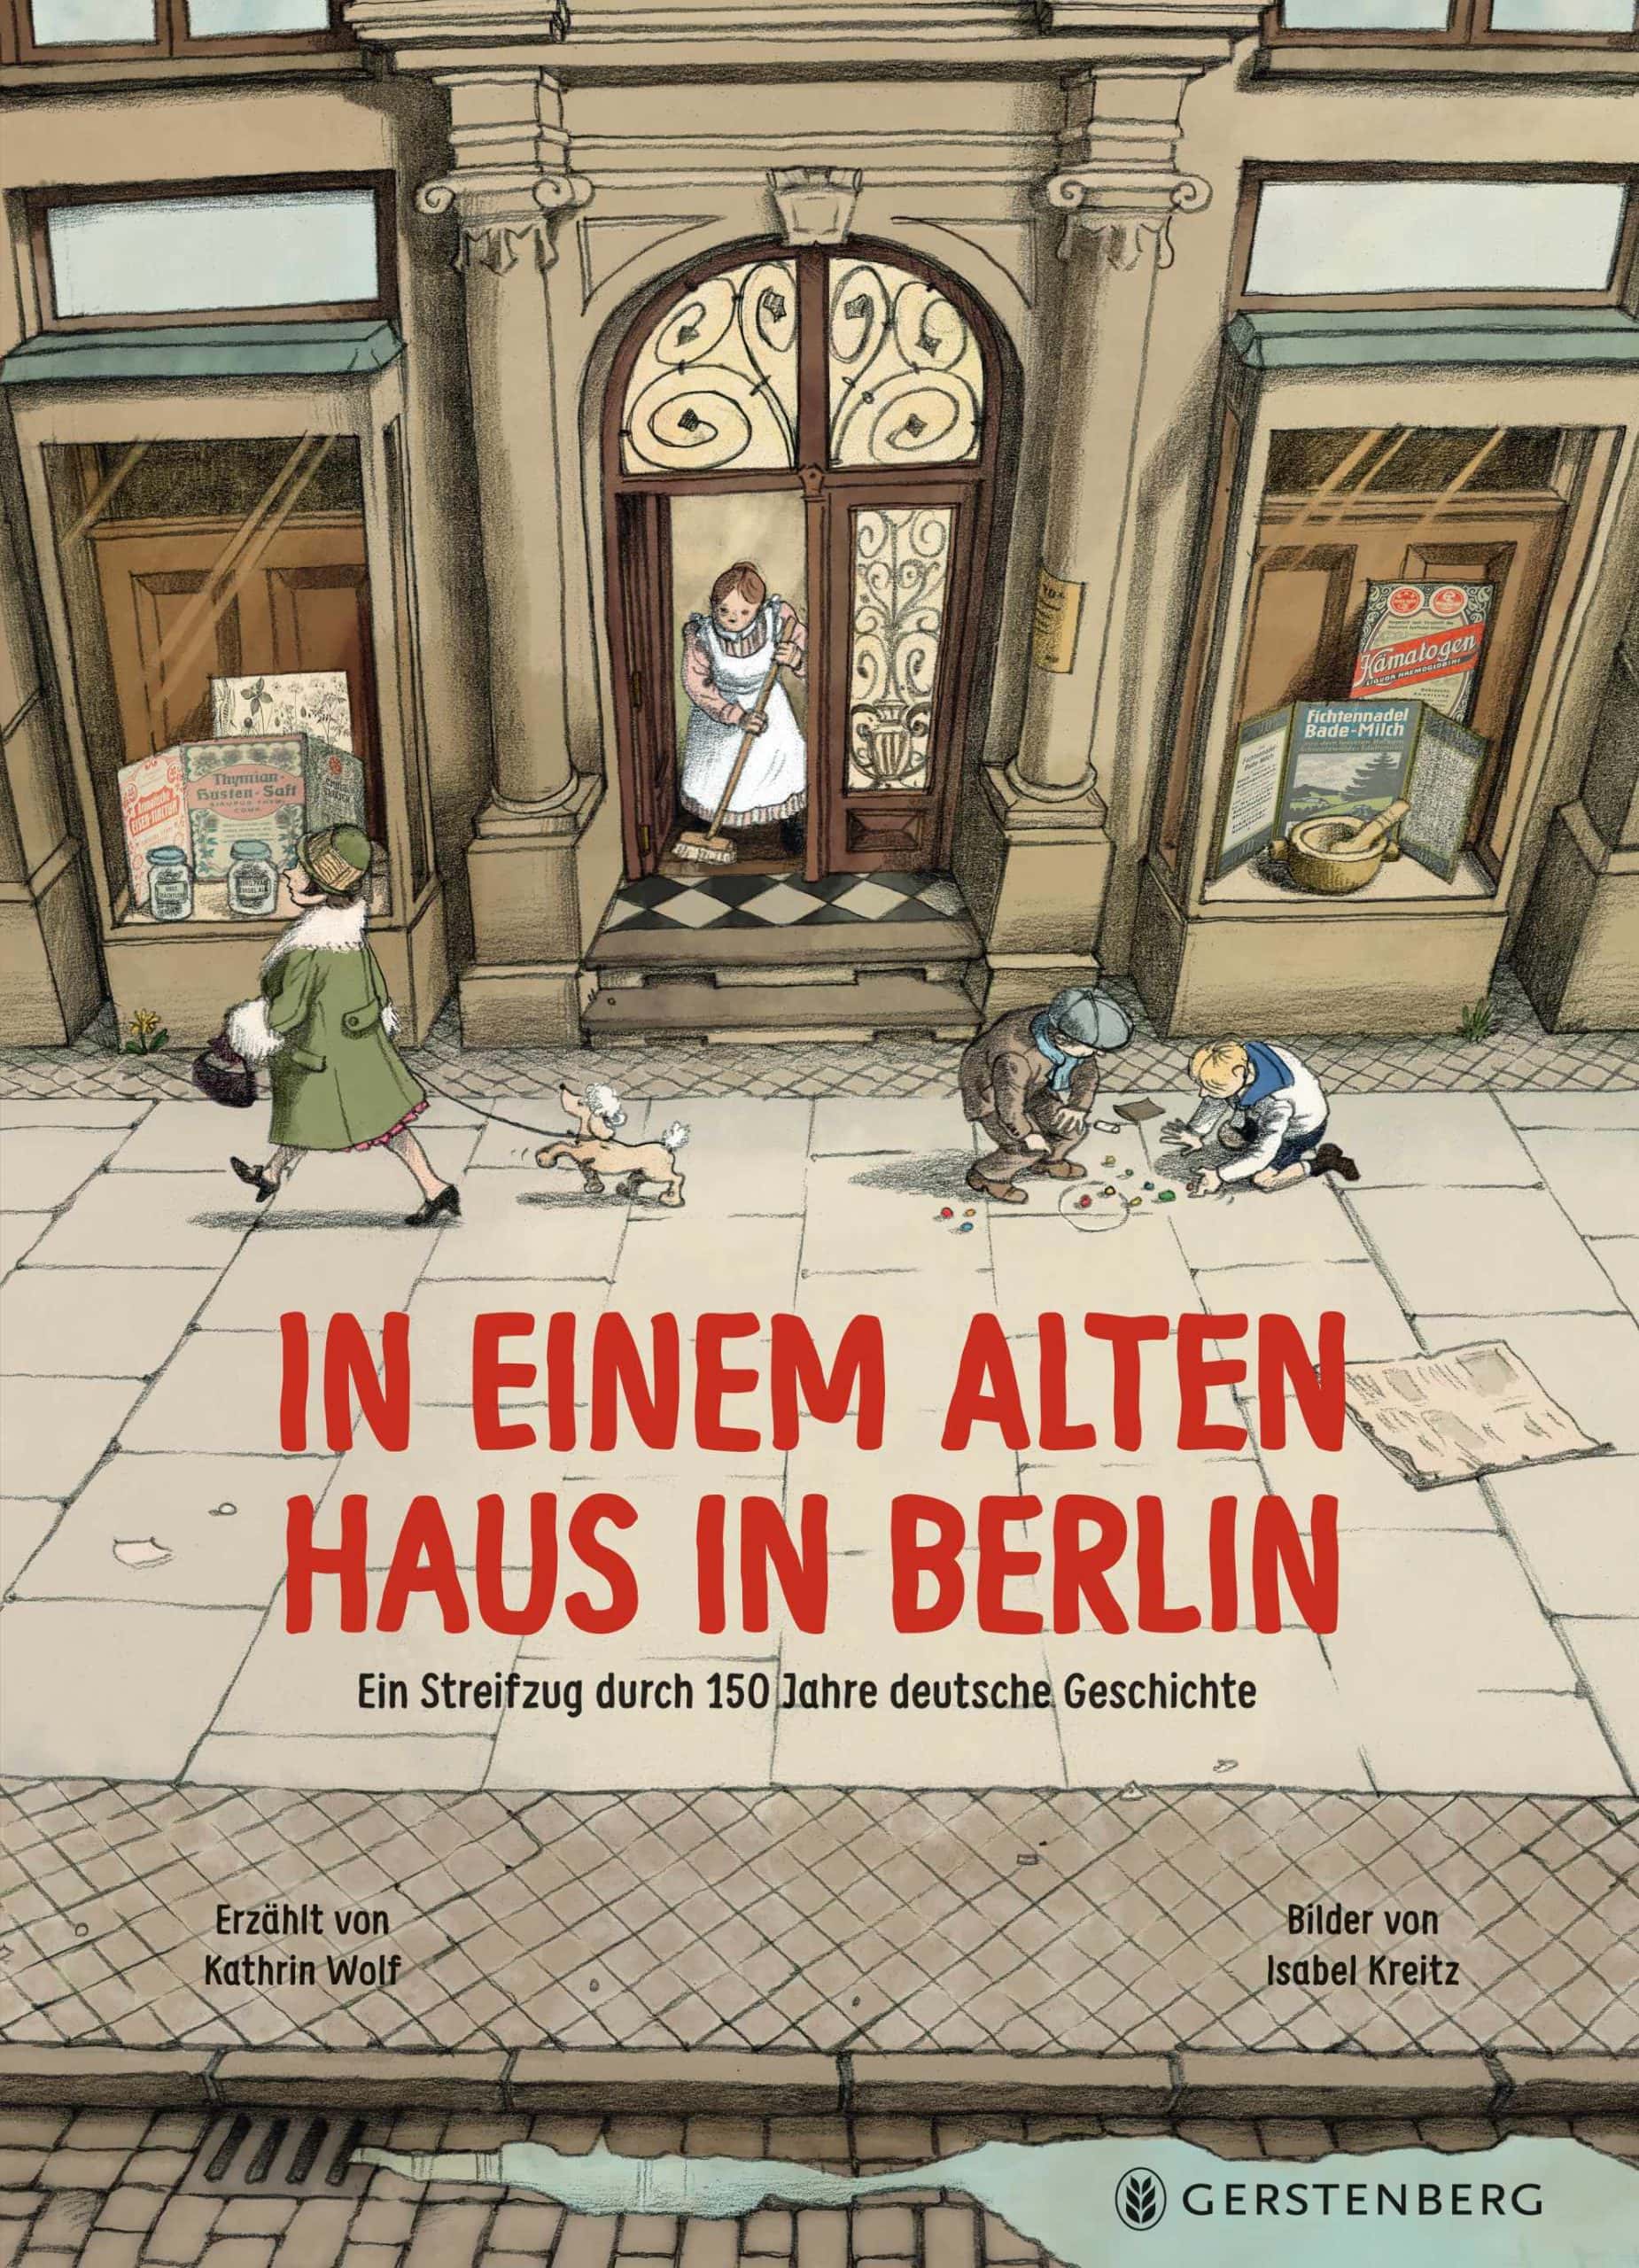 Sachbilderbuch über Berlins Geschichte für Kinder: In einem alten Haus in Berlin, Gerstenberg Verlag // HIMBEER